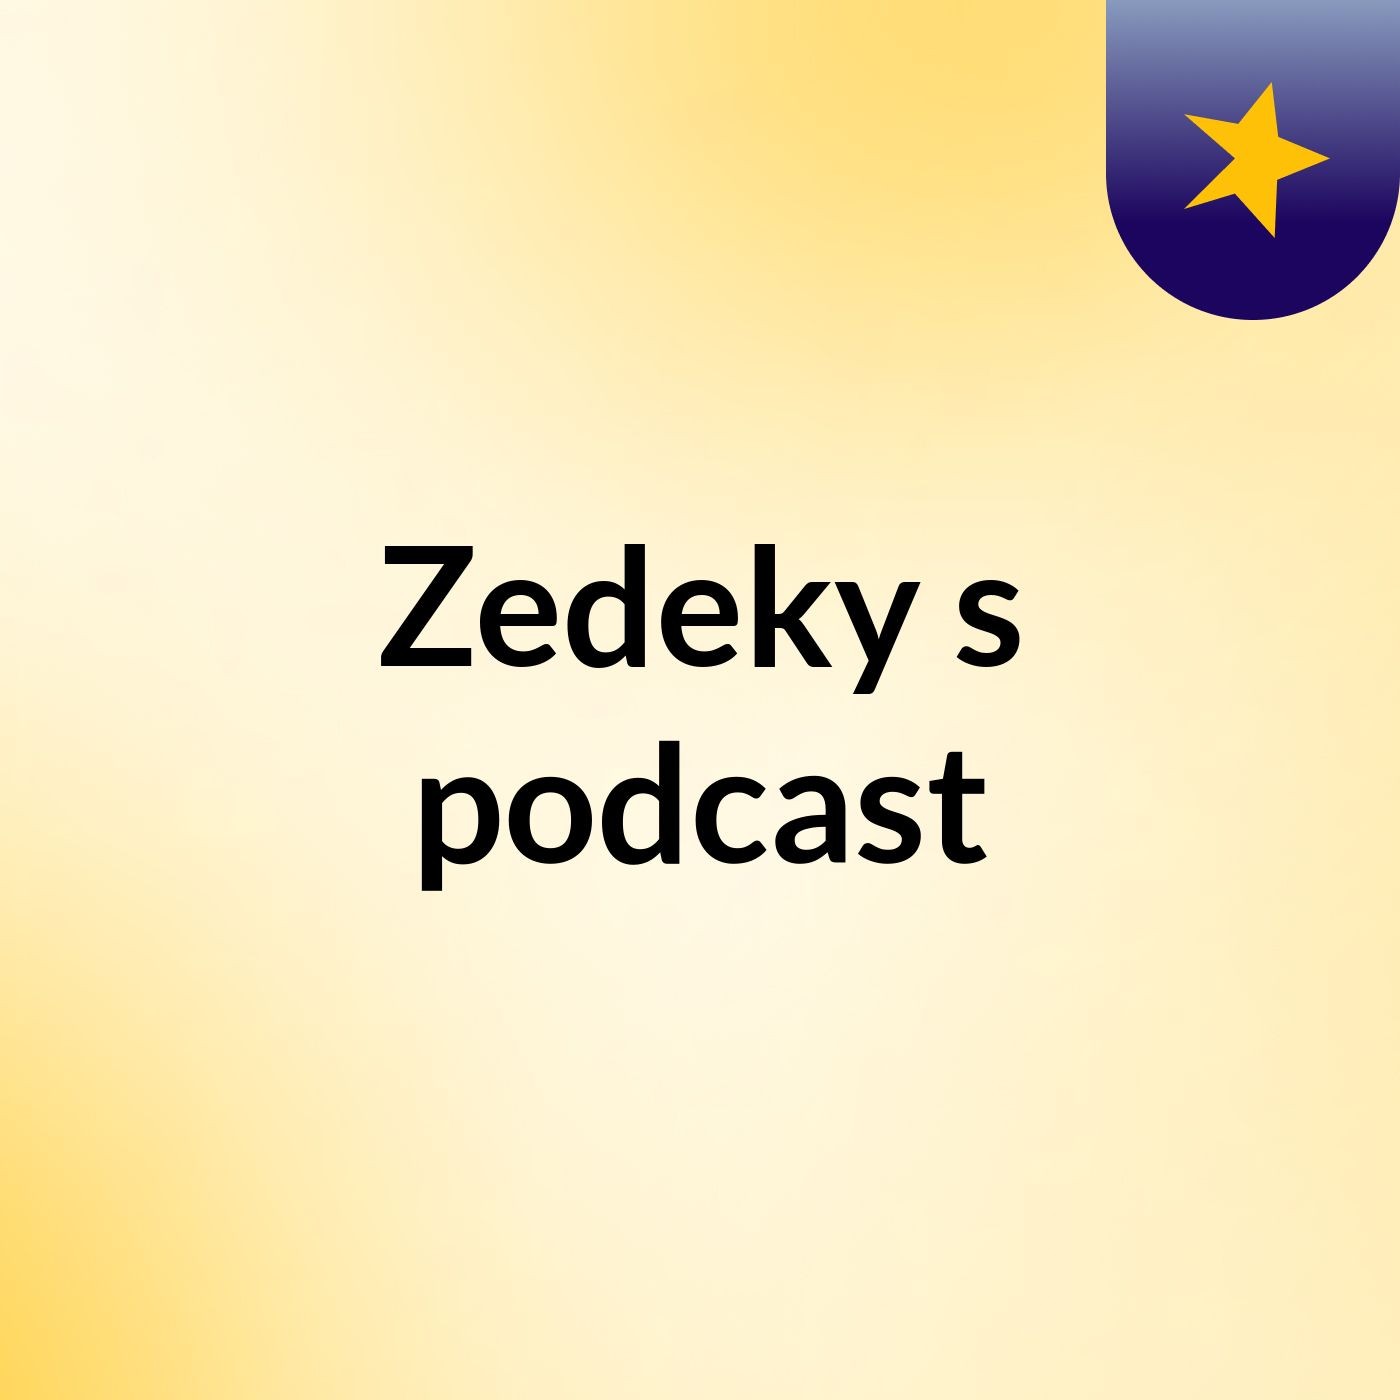 Zedeky's podcast